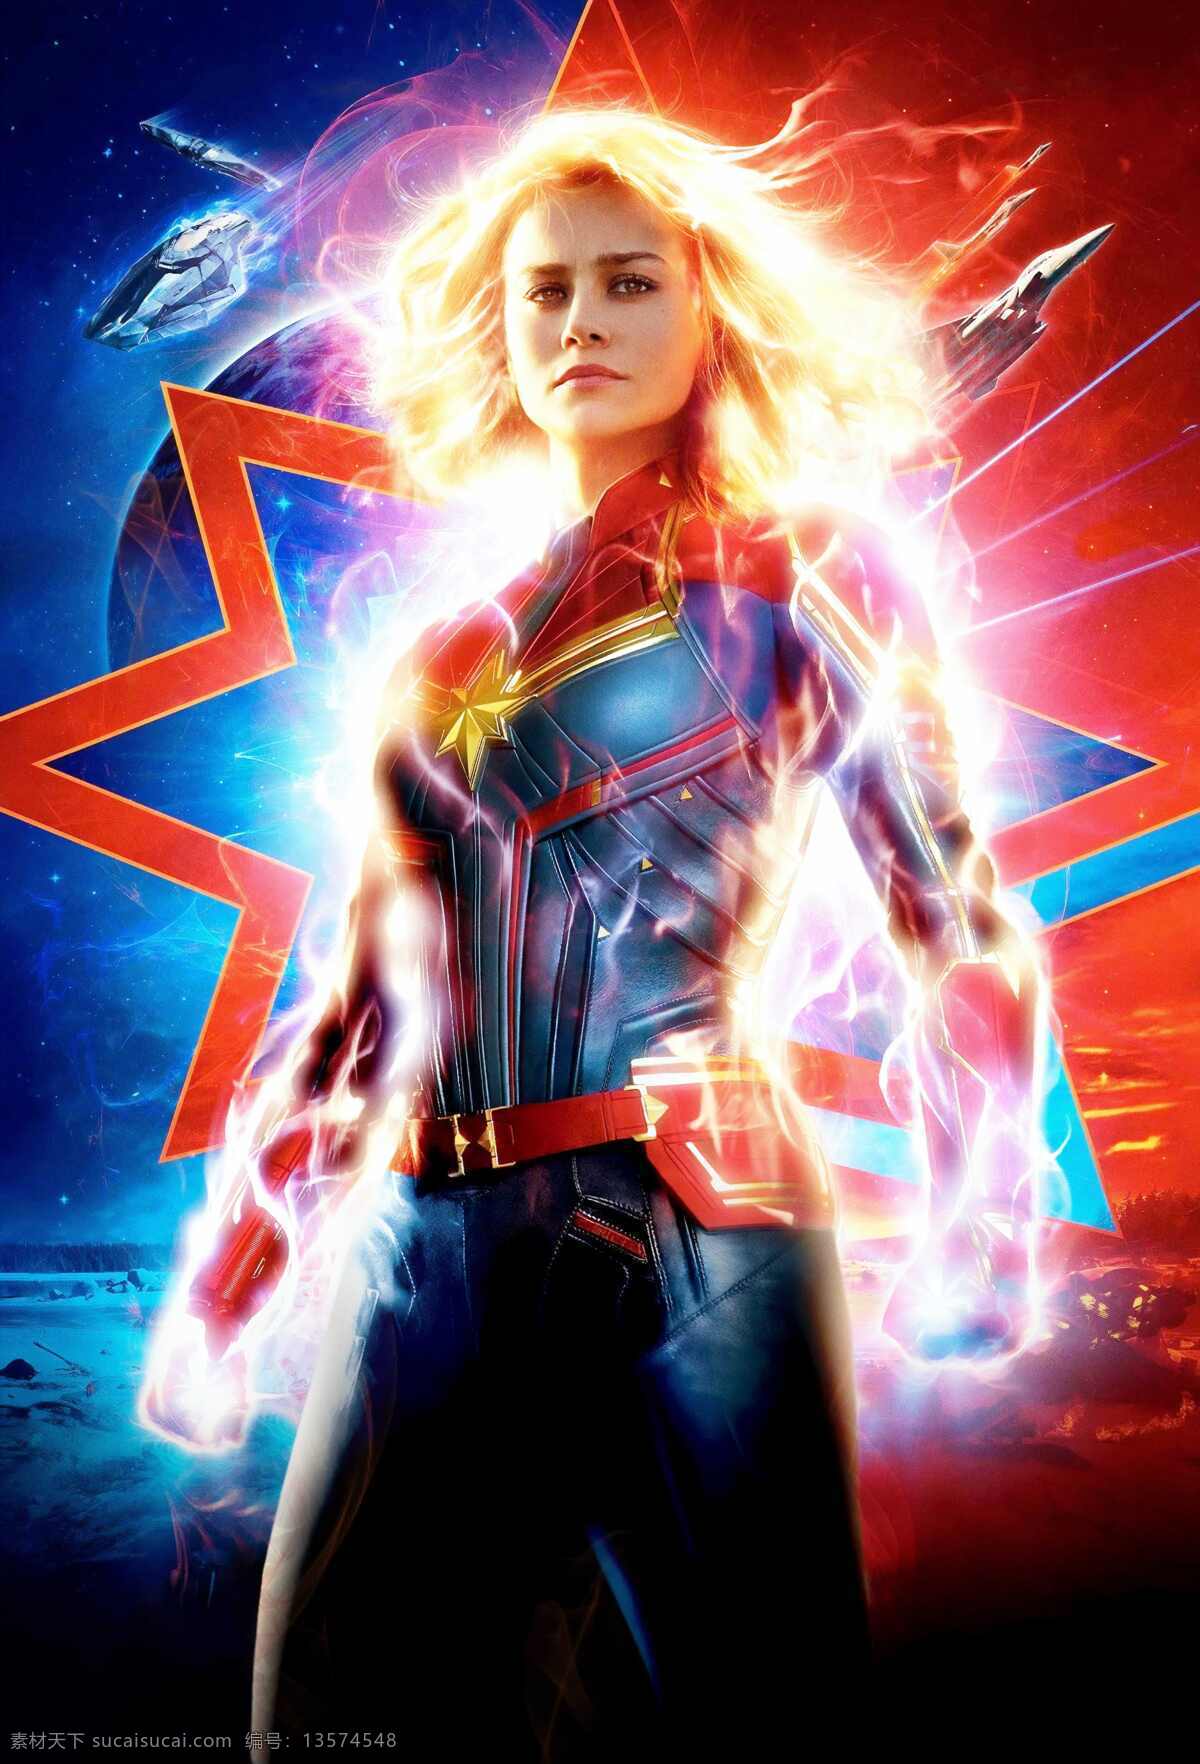 惊奇队长 漫威队长 惊奇女士 logo 布丽 拉尔森 英雄 超级英雄 漫威 漫威宇宙 电影海报 marvel cinematic 文化艺术 影视娱乐